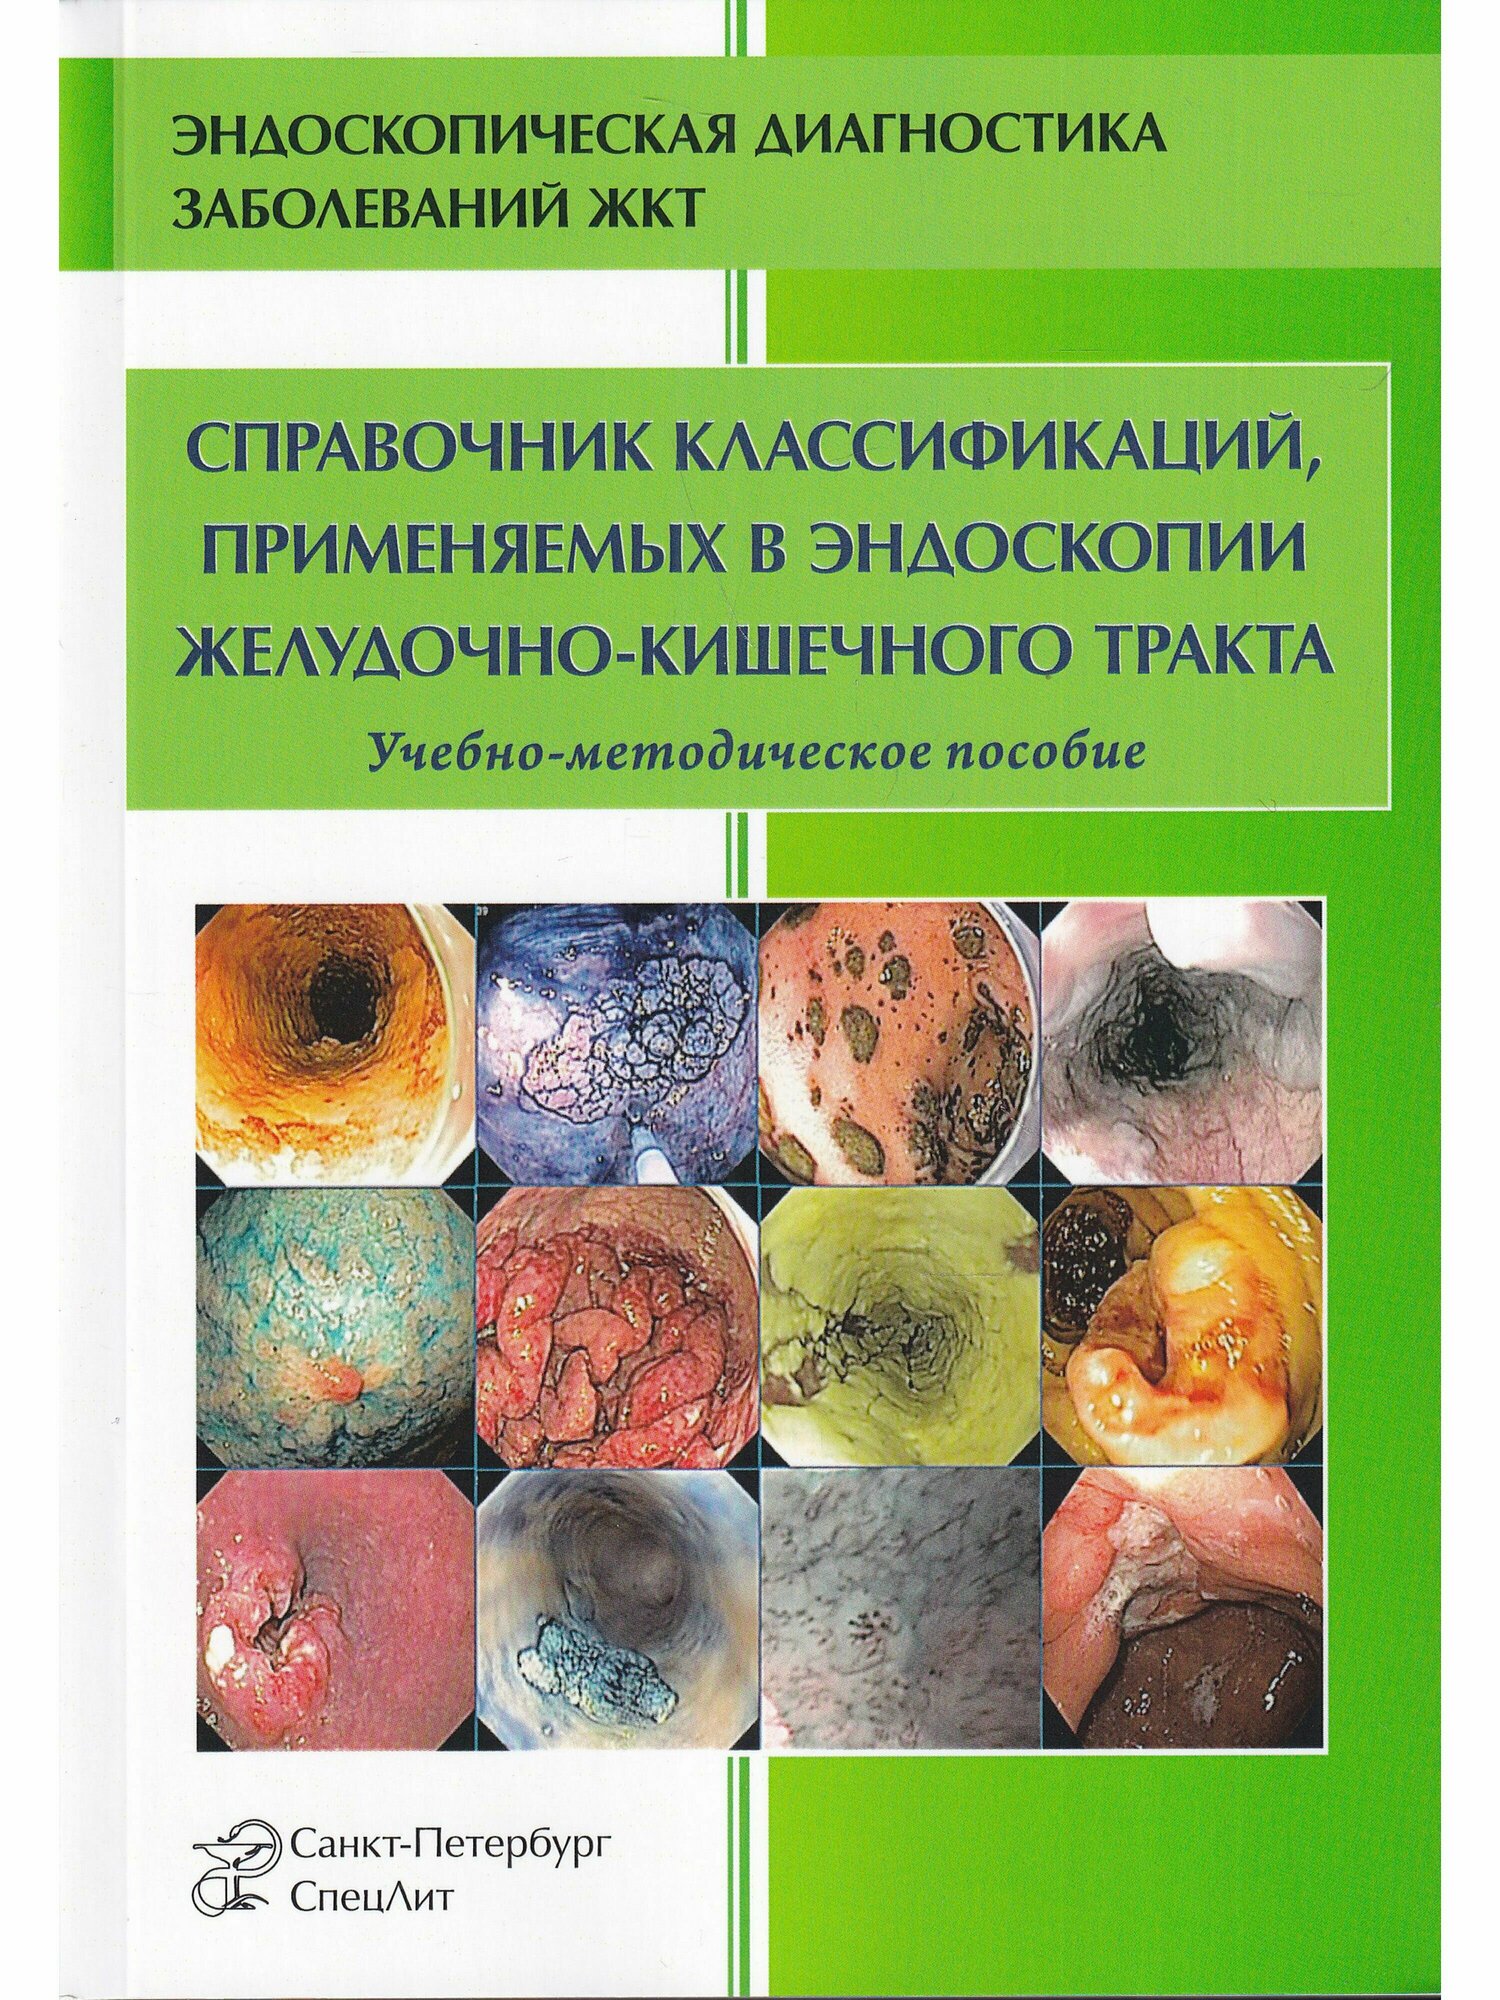 Справочник классификаций, применяемых в эндоскопии ЖКТ